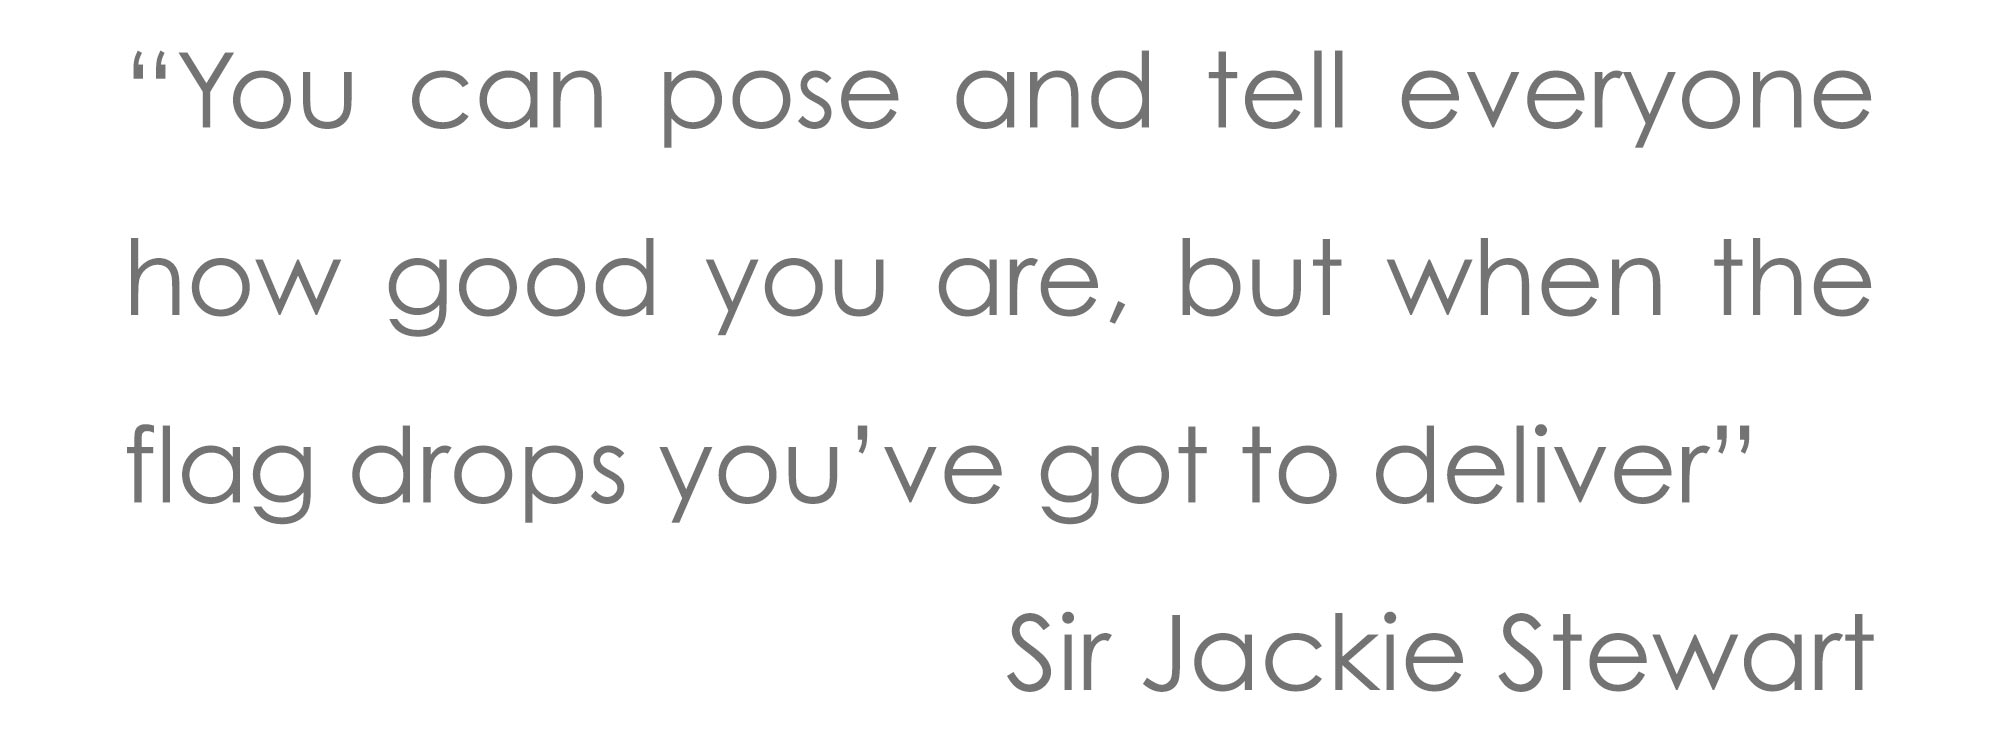 Jackie-Stewart-quote-25pt-text.jpg